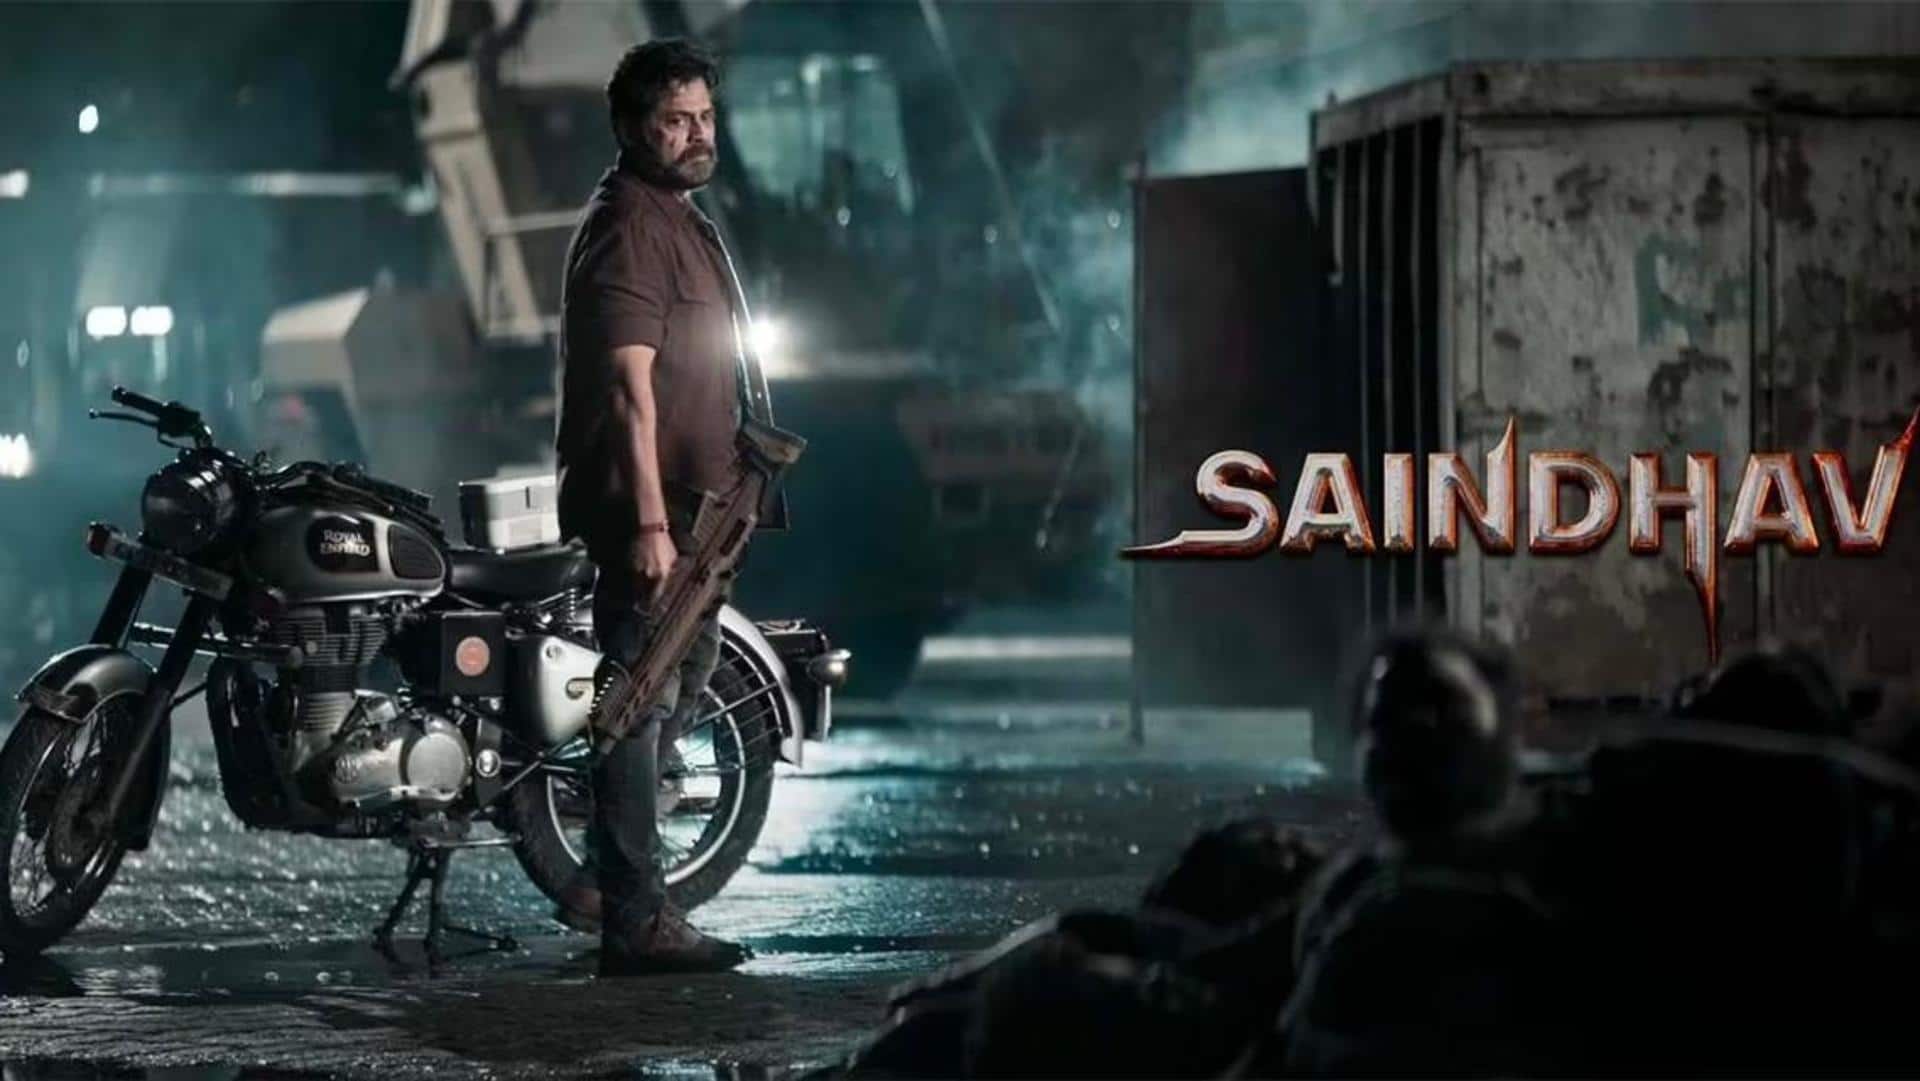 'Saindhav's female lead announced: Everything about Venkatesh Daggubati's actioner film